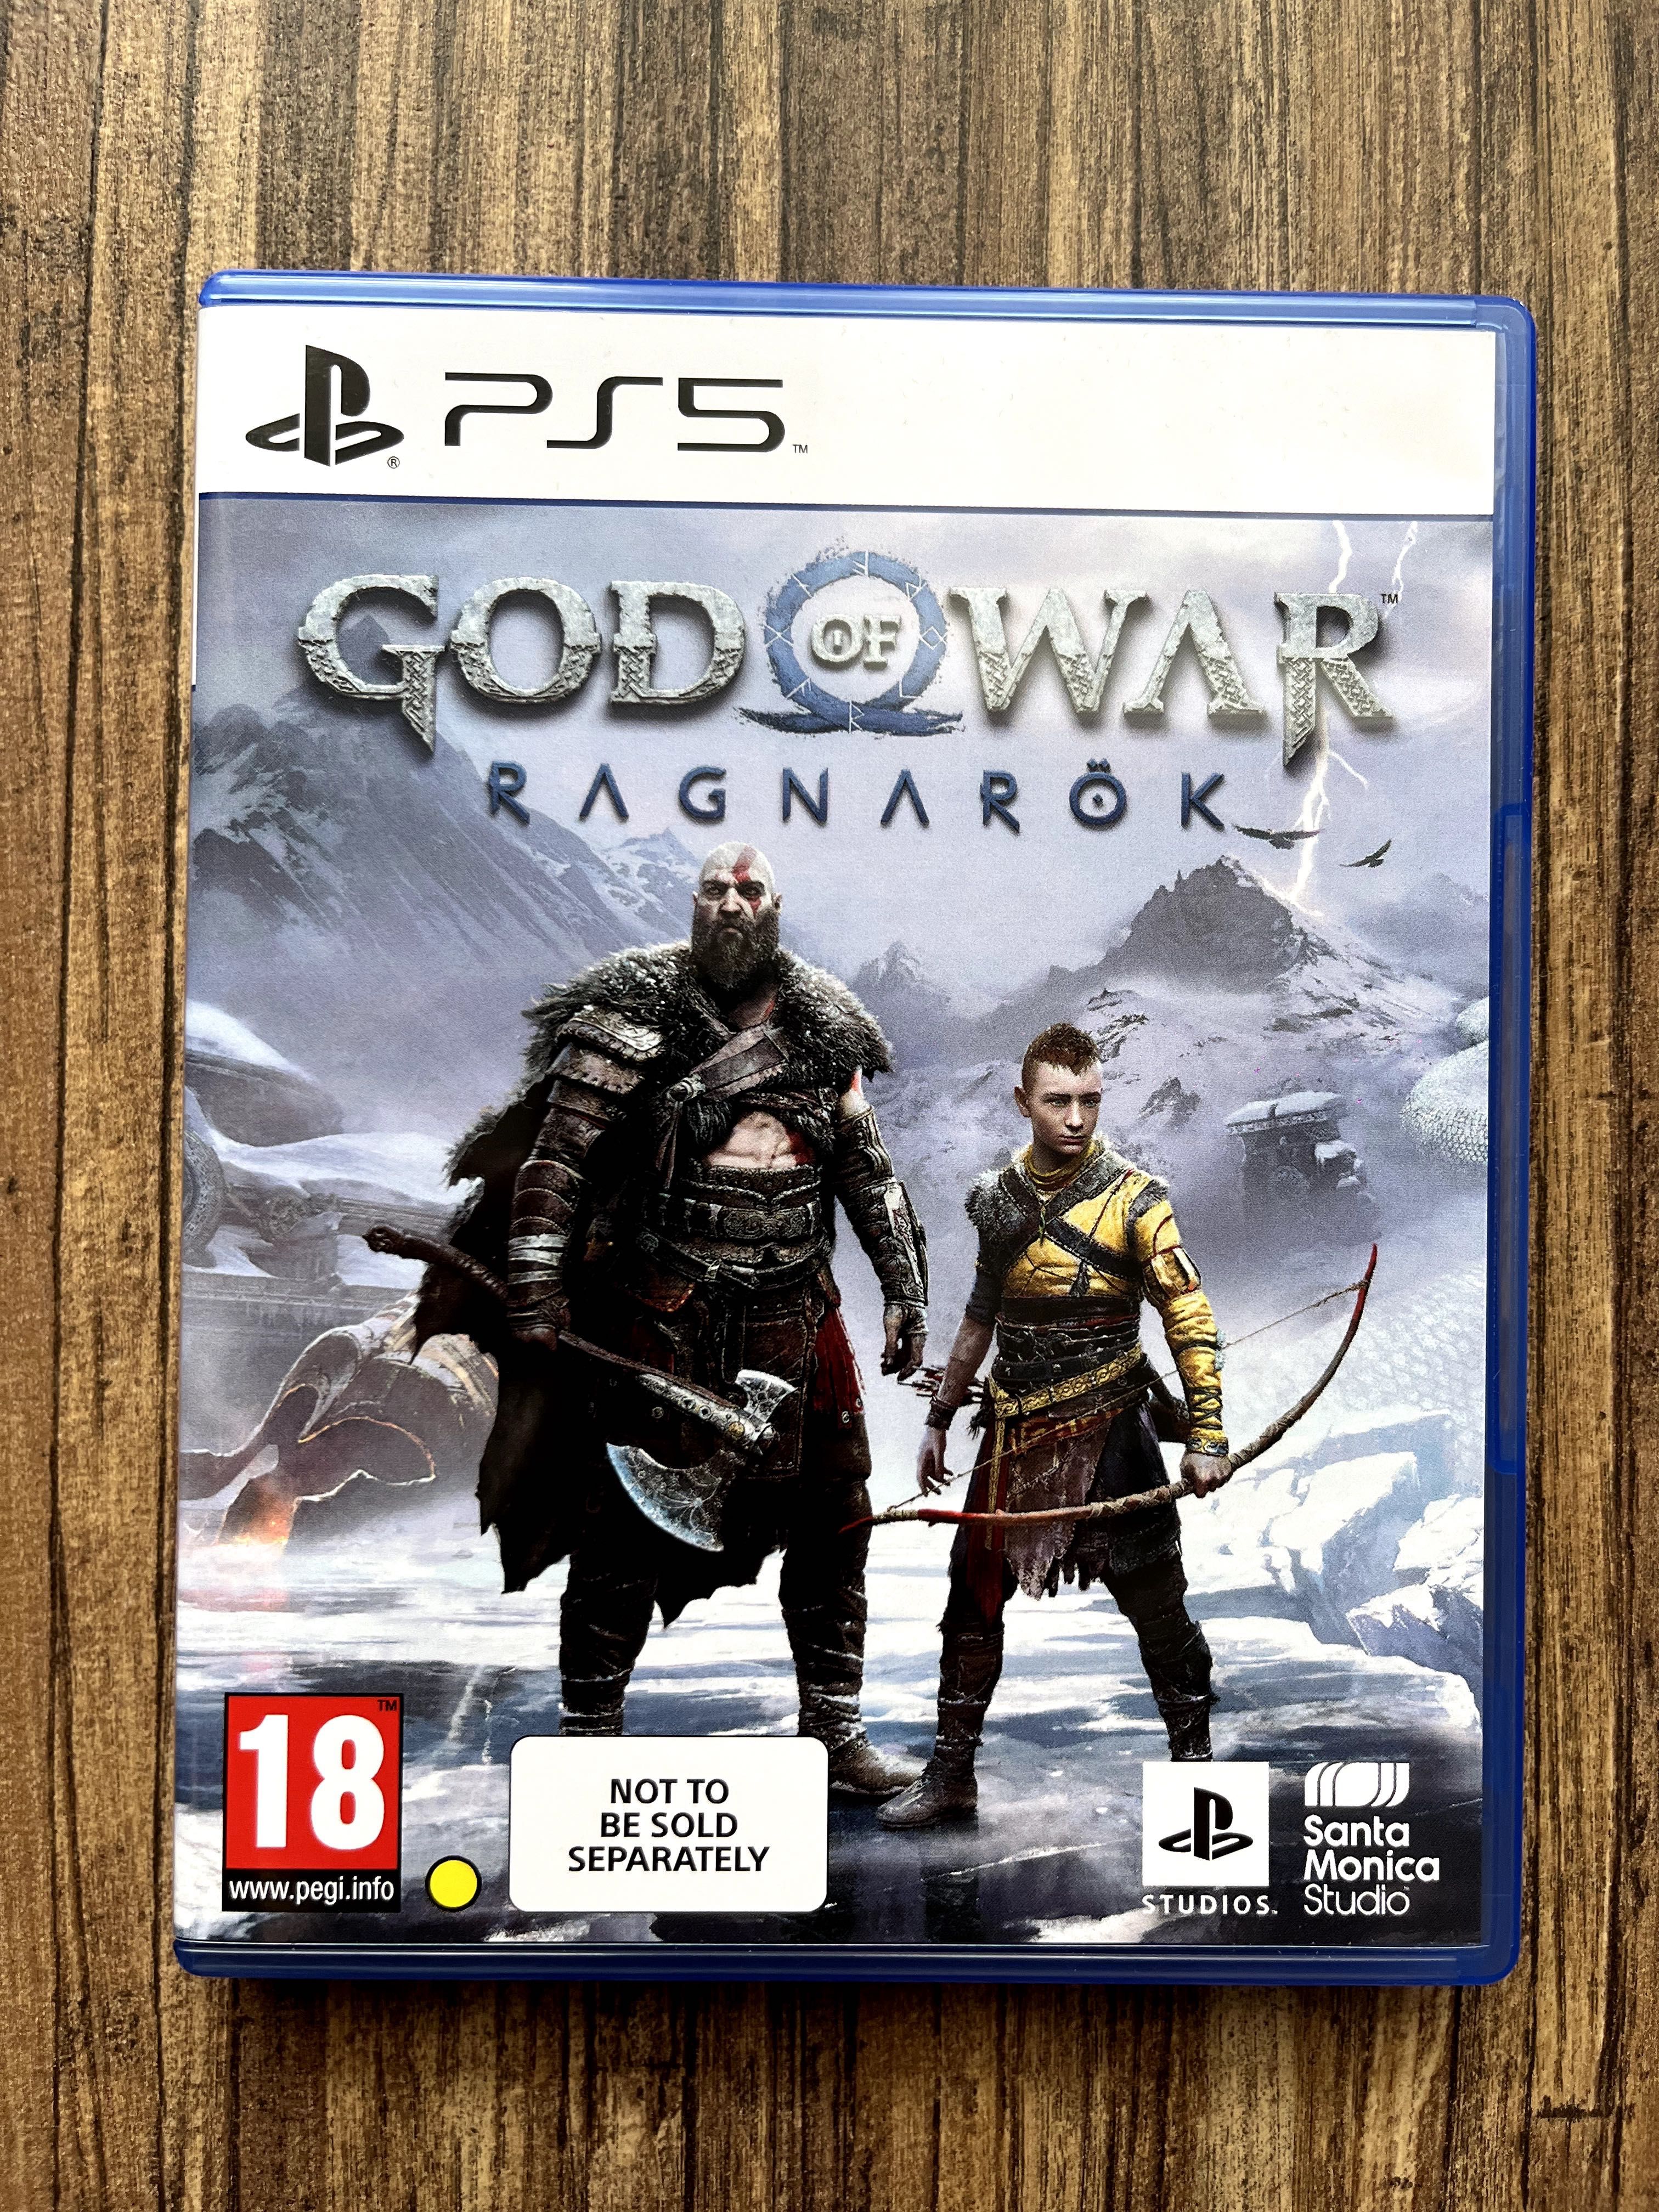 Sony PlayStation 5 (PS5) Disc Edition + God of War Ragnarök - Black